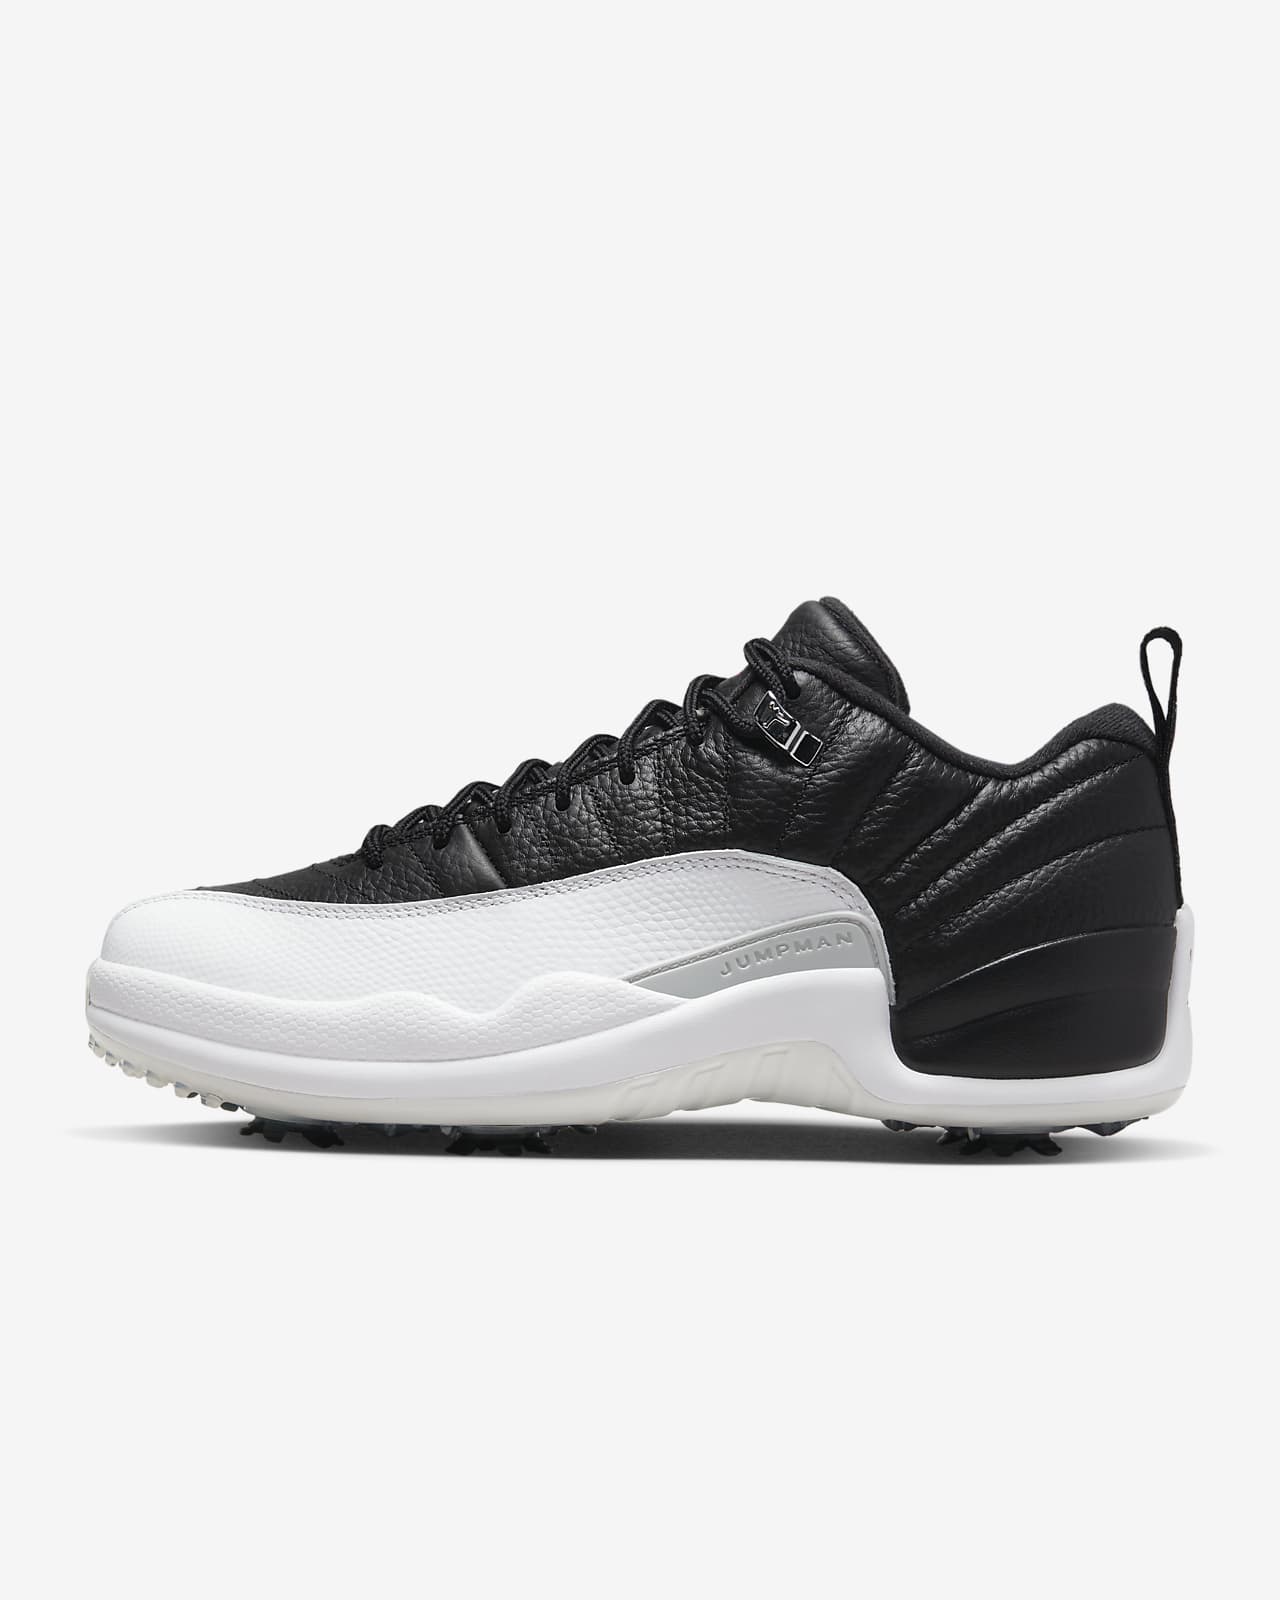 Air Jordan 12 Low Golf Shoes Nike RO